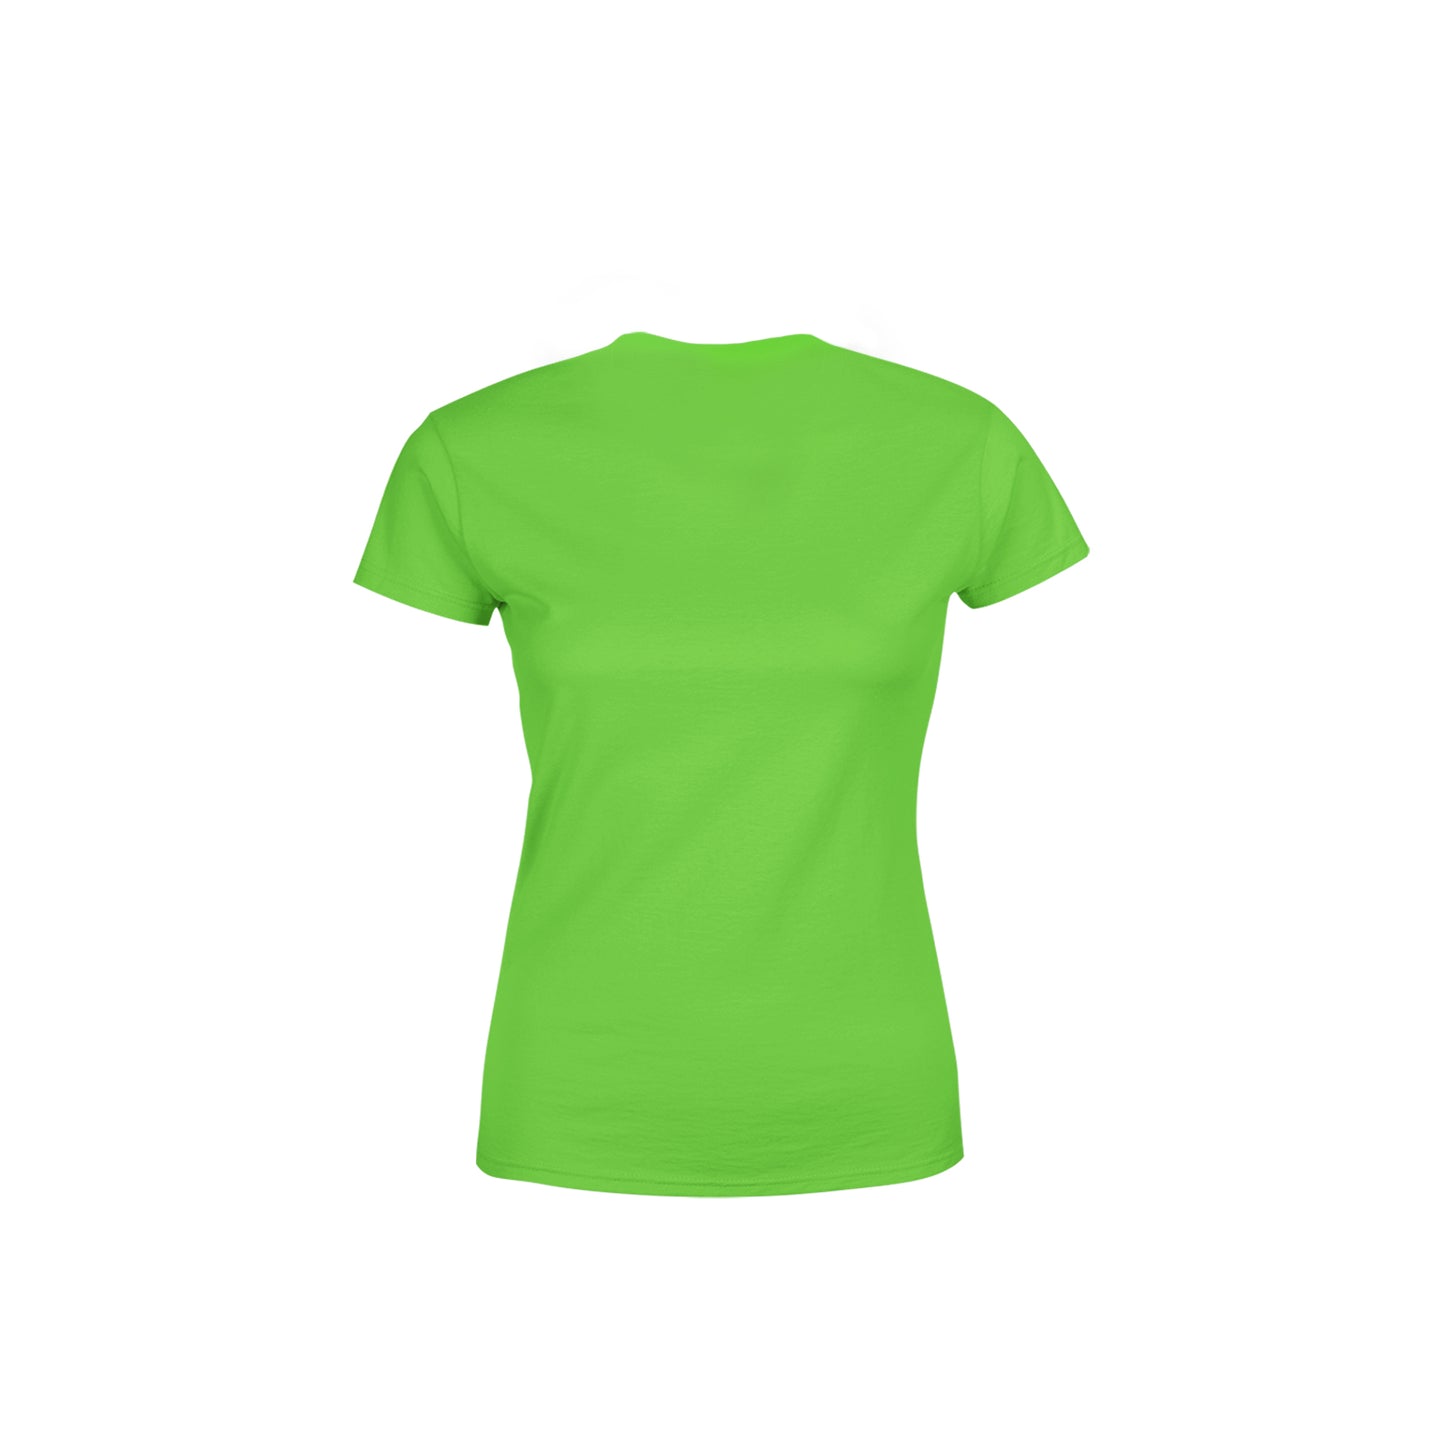 49 Number Women's T-Shirt (Liril Green)